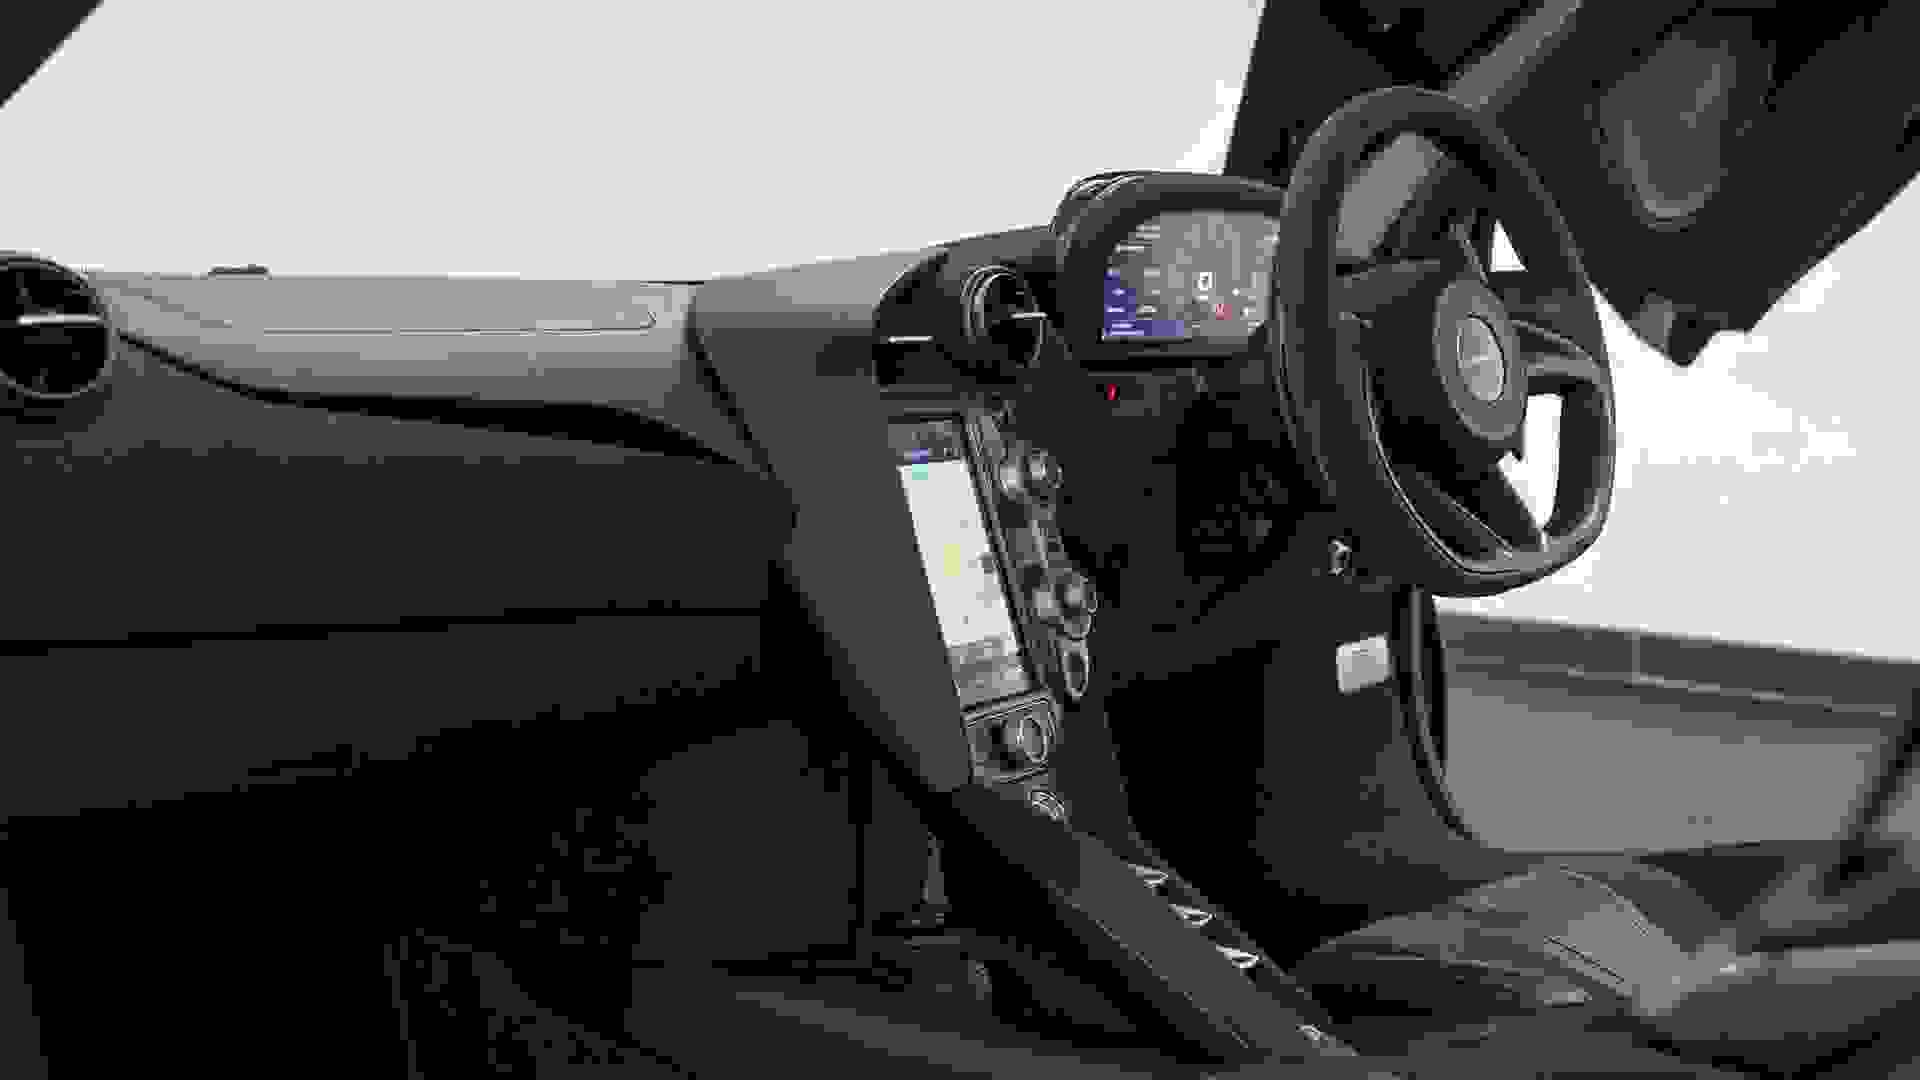 McLaren 720S Photo ecd13d32-2cc9-4c7a-b2e9-3ab11771a39c.jpg